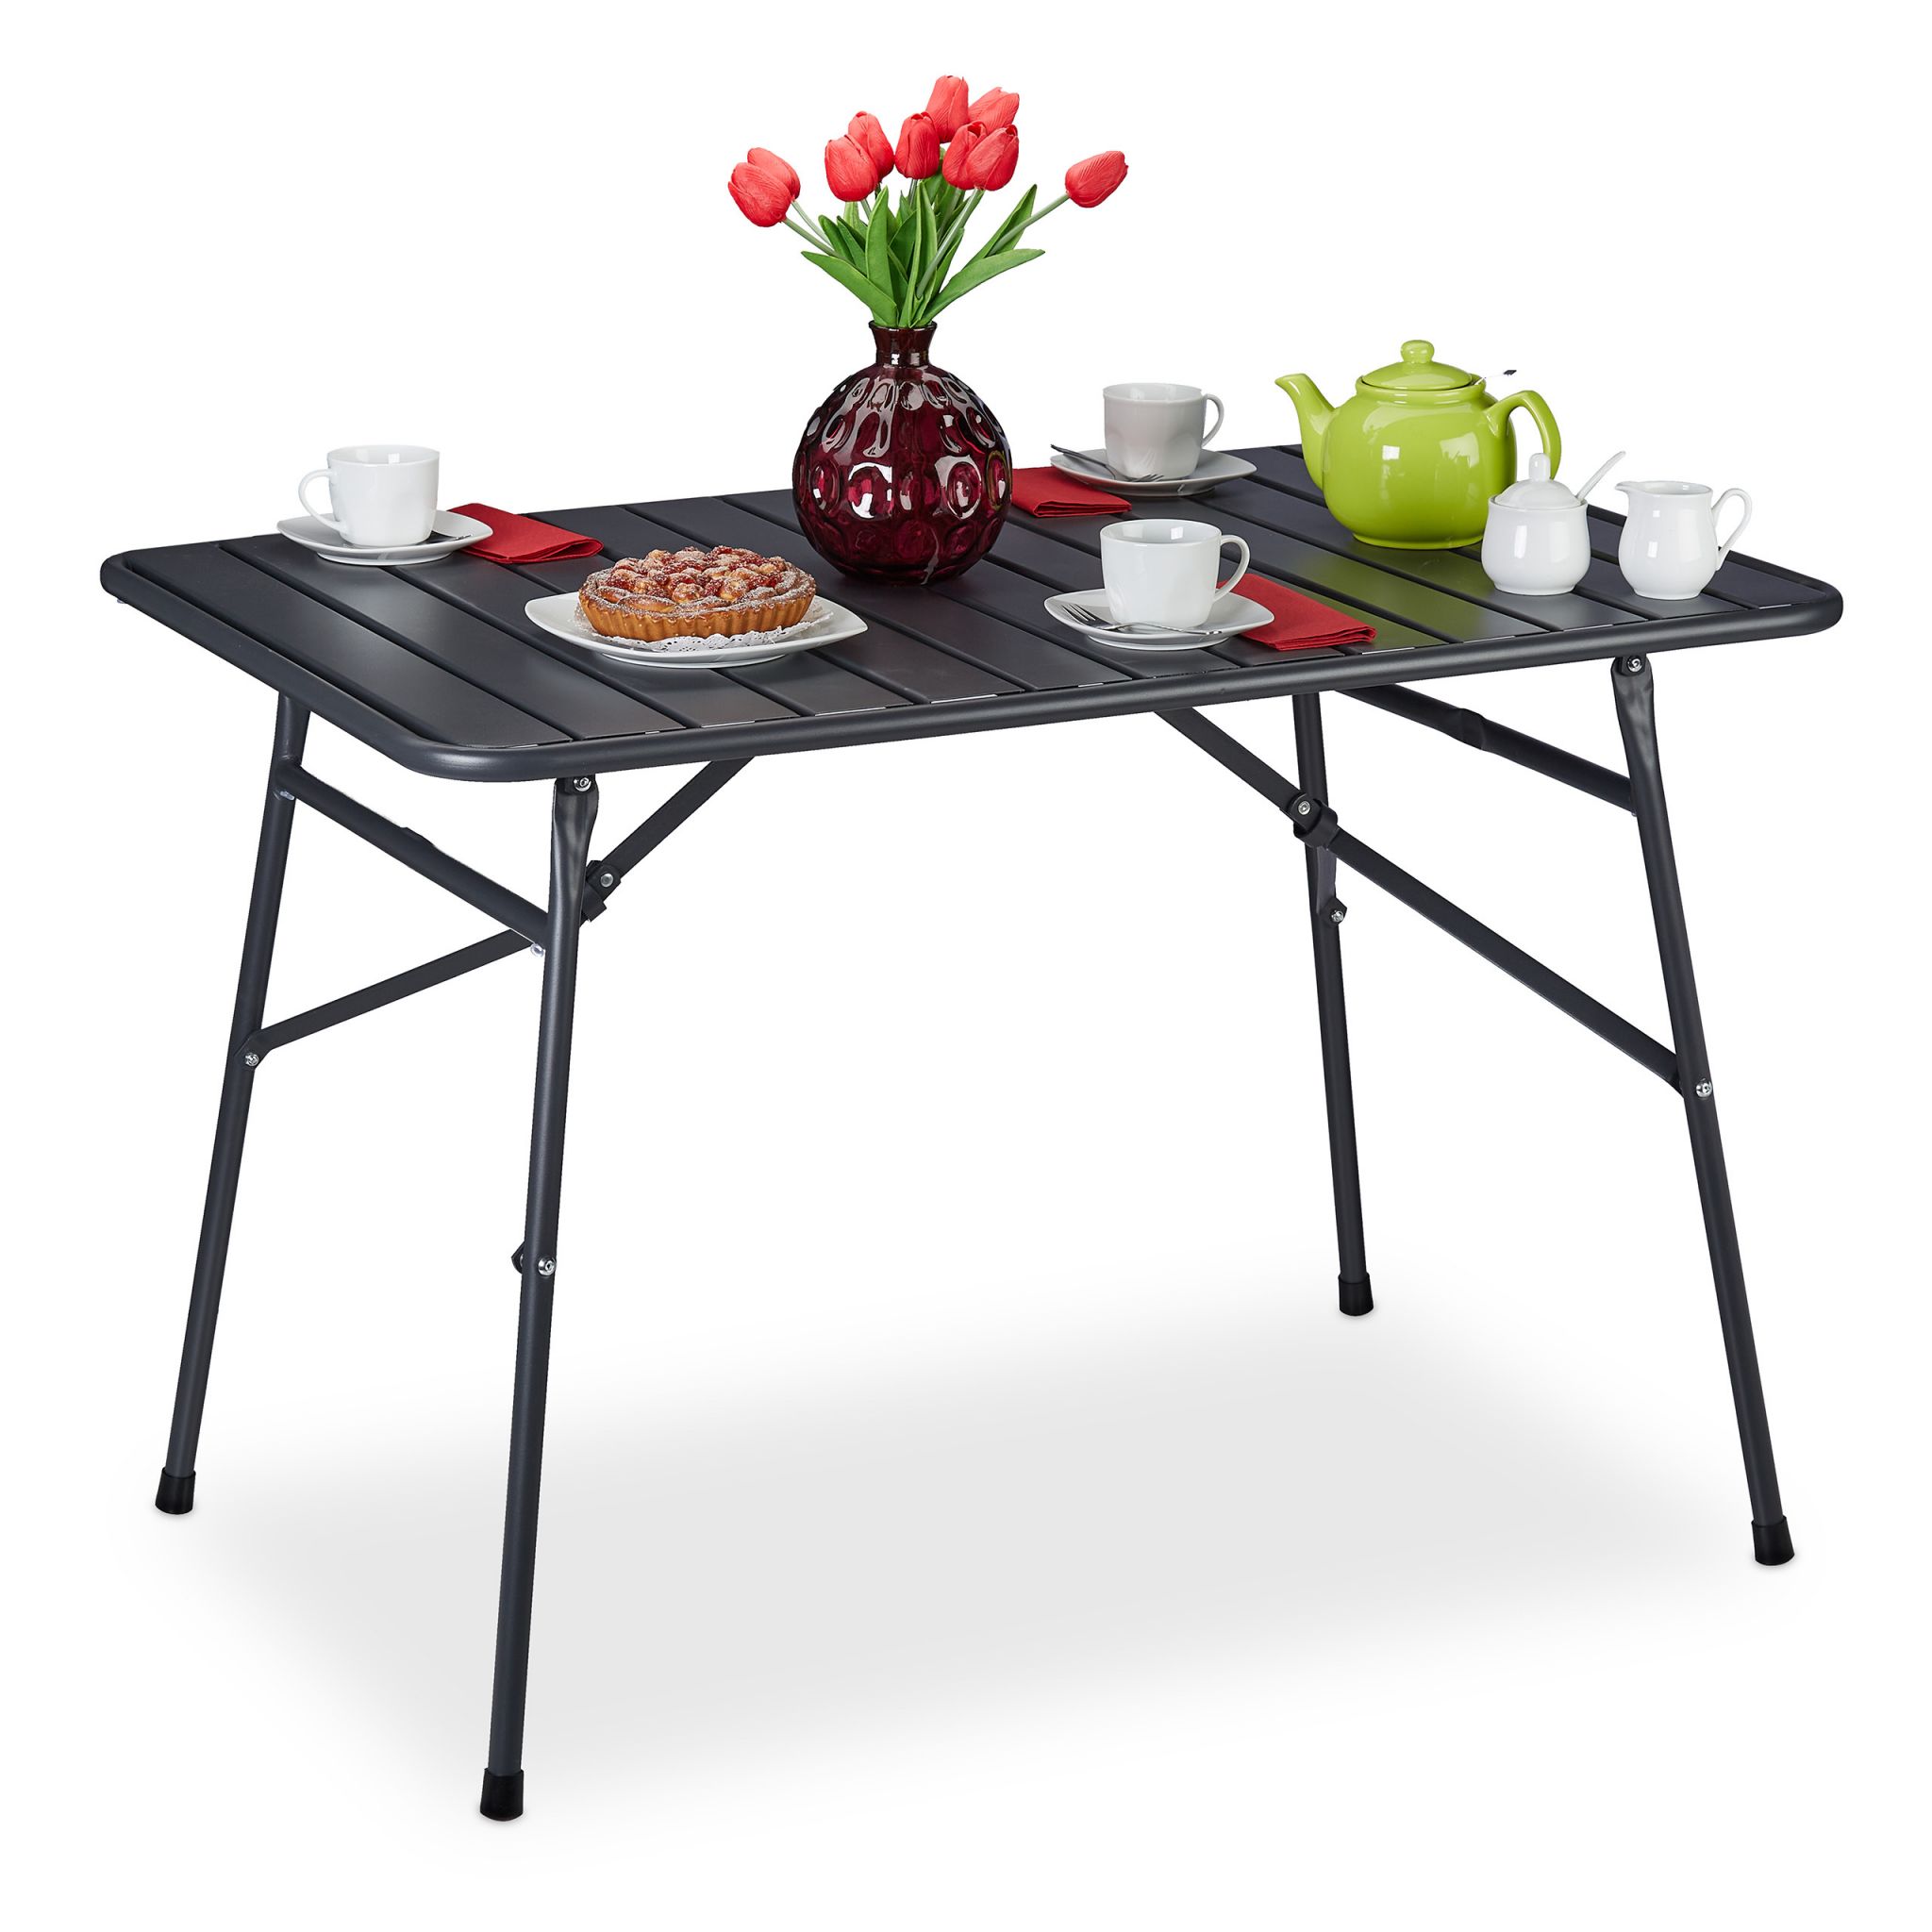 E-shop Balkónový skladací stôl, RD36108